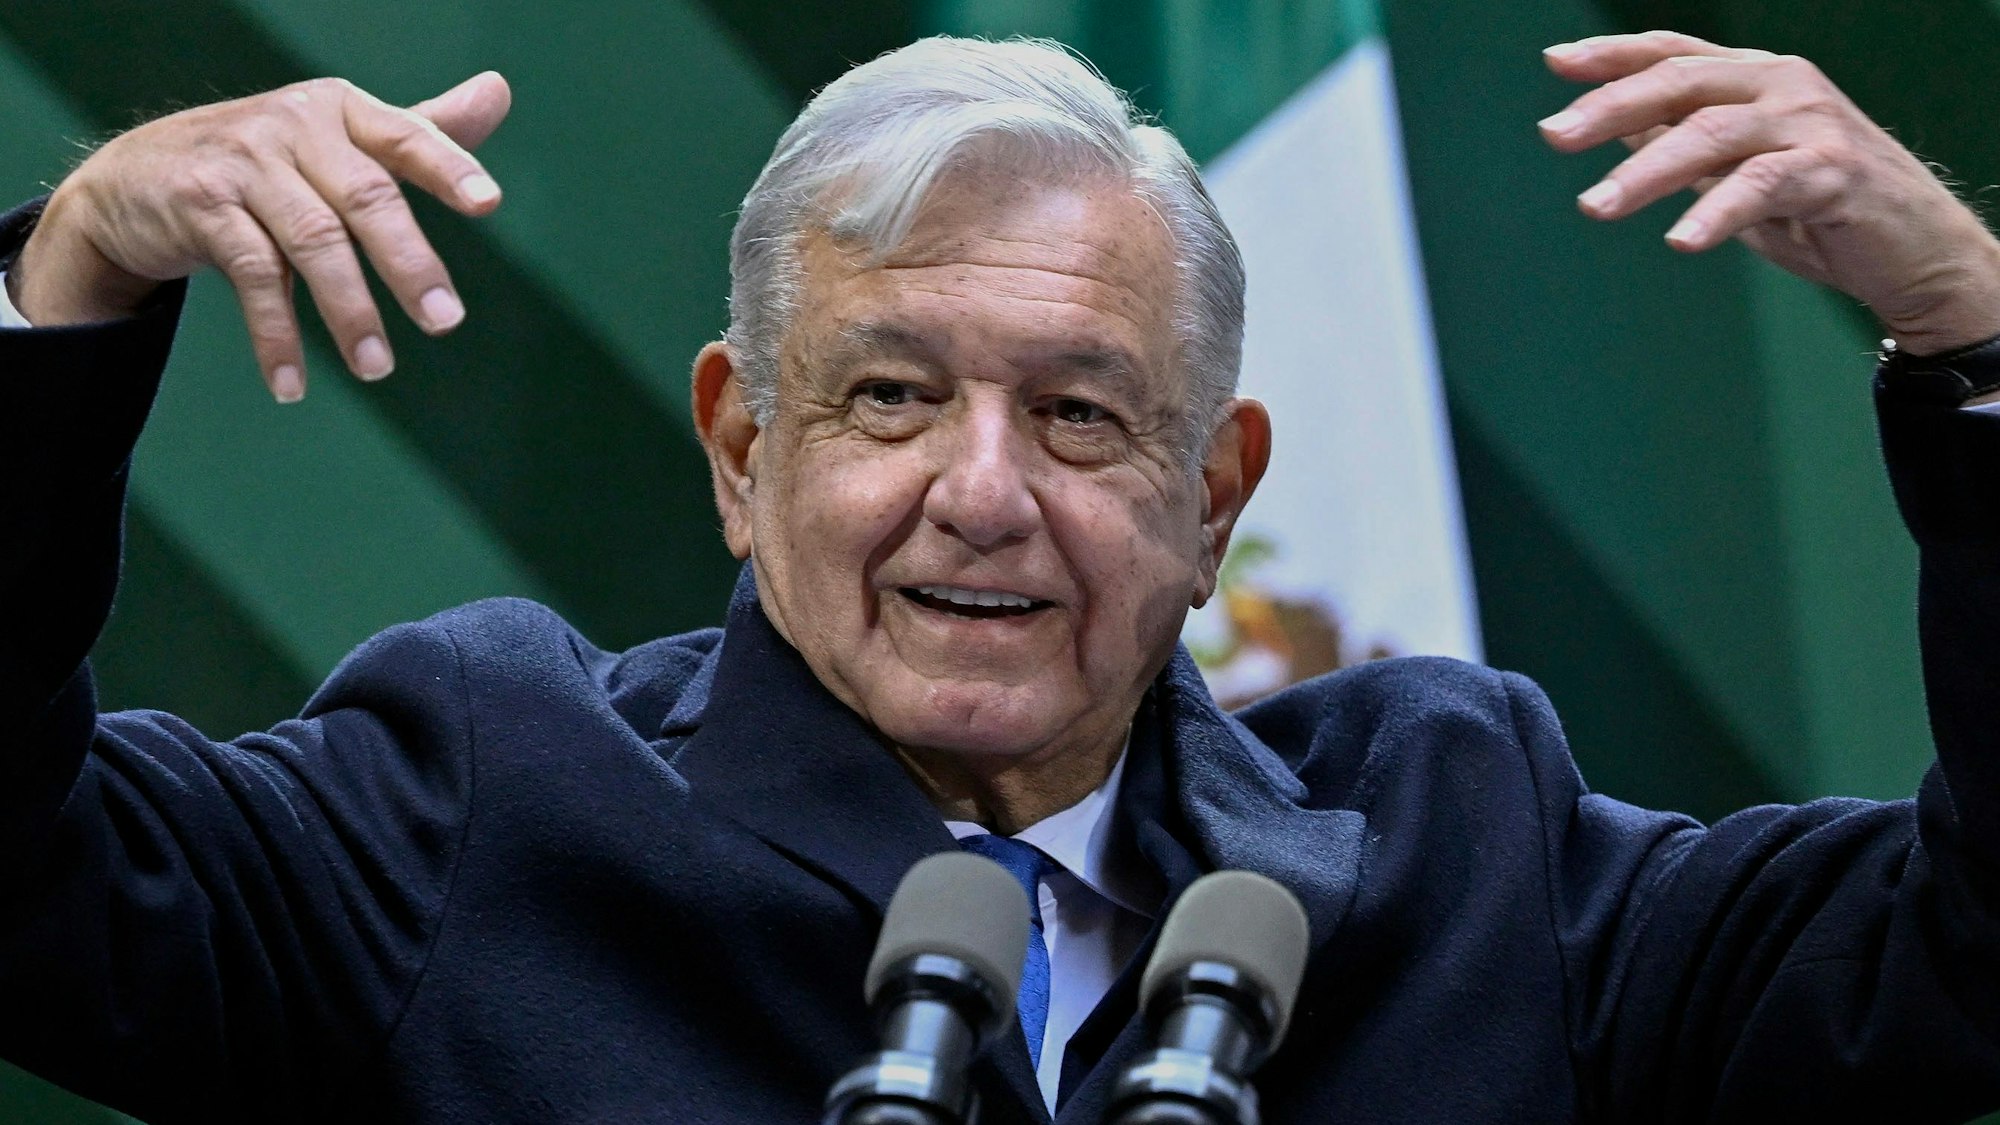 Der mexikanische Präsident Andres Manuel Lopez Obrador hat auf Twitter ein Foto eines vermeintlichen Maya-Waldgeistes veröffentlicht – und damit für Belustigung und Verwunderung gesorgt. (Archivbild)